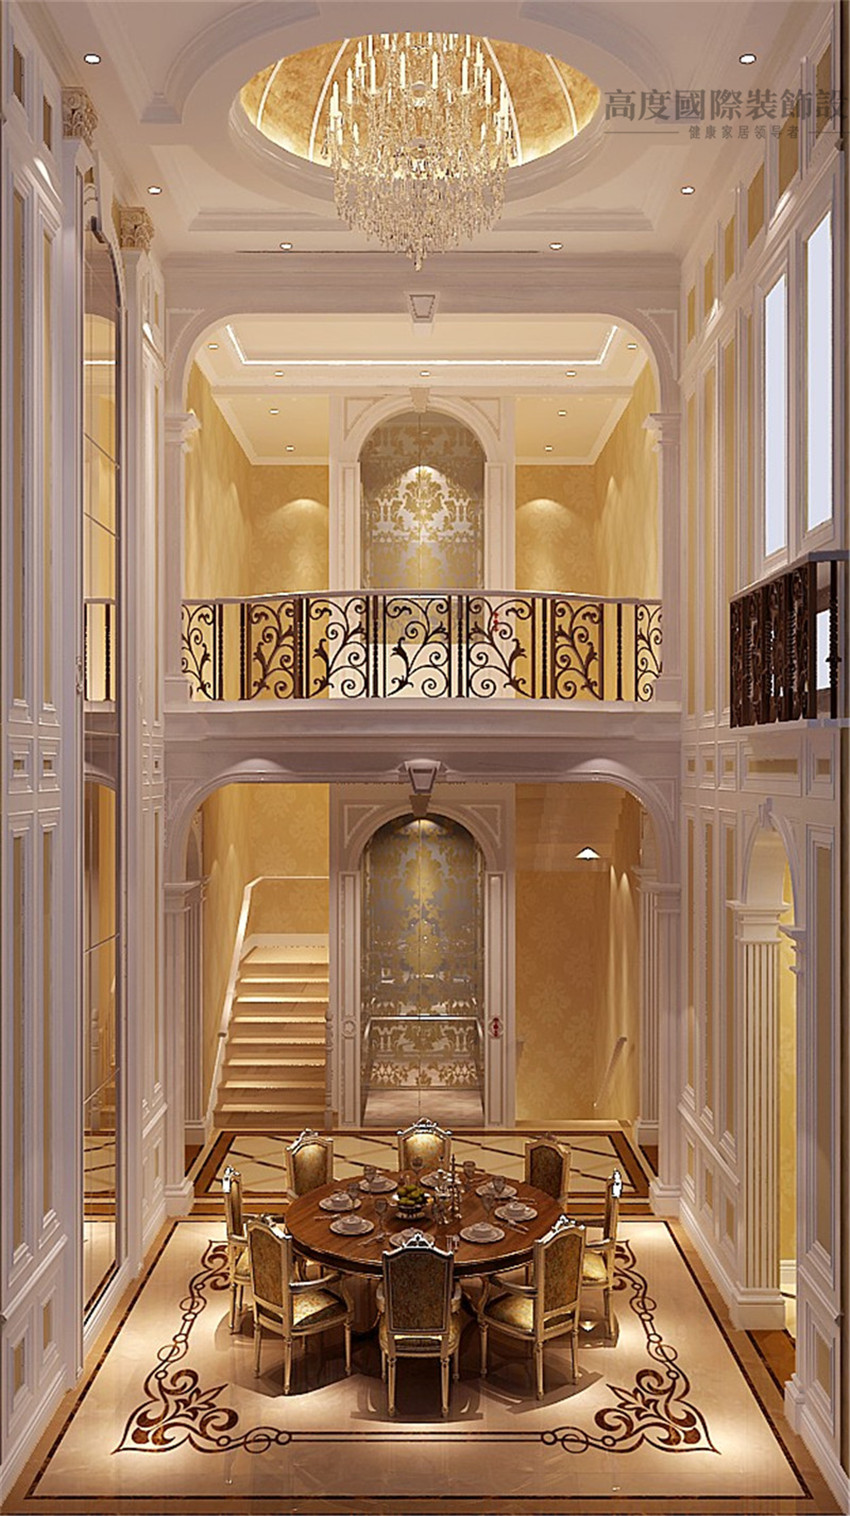 法式 装饰设计 室内设计 别墅 装修 餐厅图片来自高度国际别墅装饰设计在中海尚湖世家法式别墅装修设计的分享